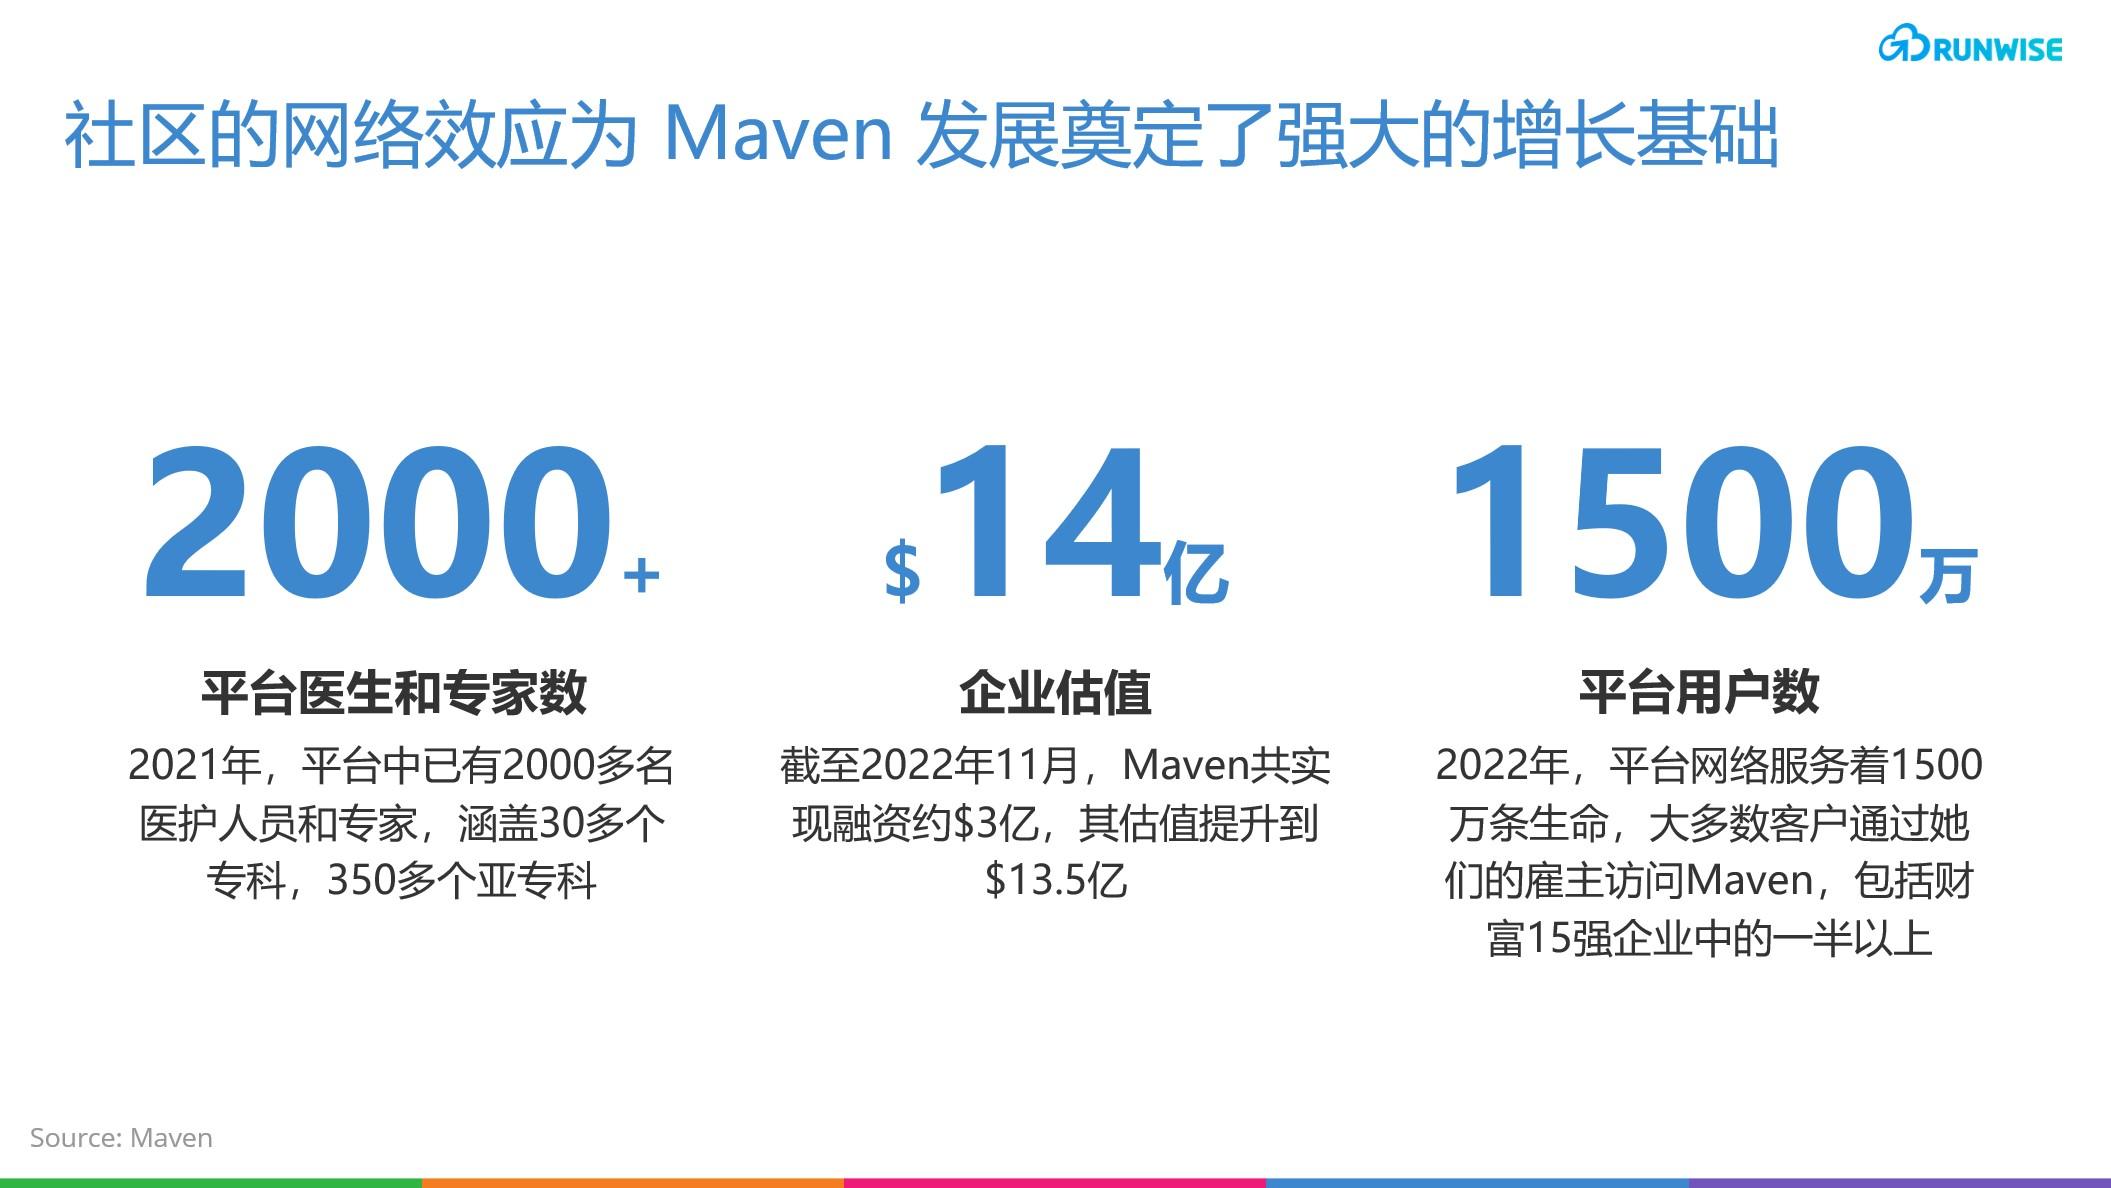 远程医疗平台Maven